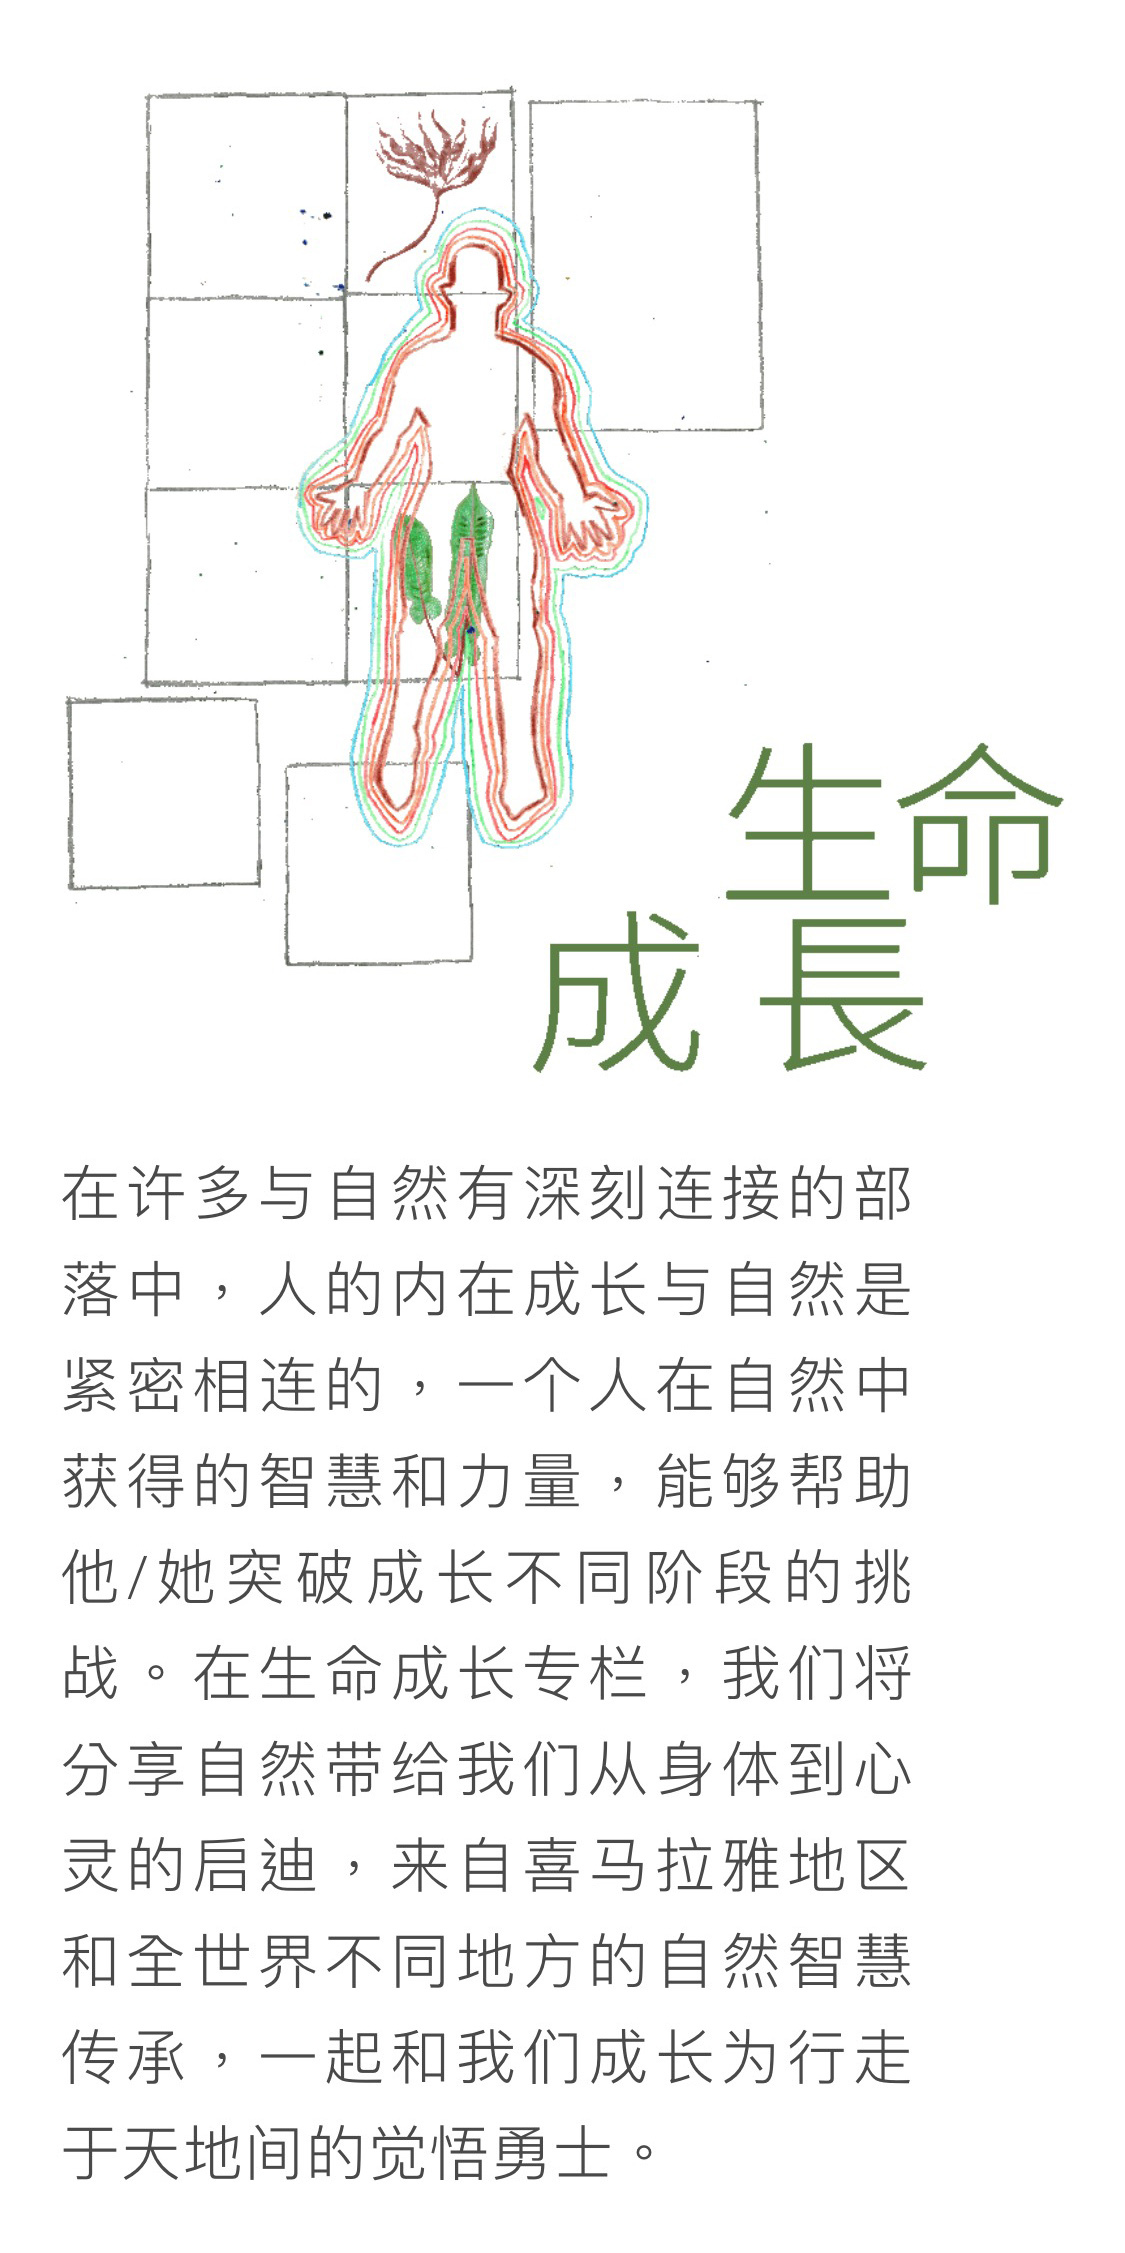 登龍云合森林學校 - 公眾號形象設計/宣傳視覺延展圖4